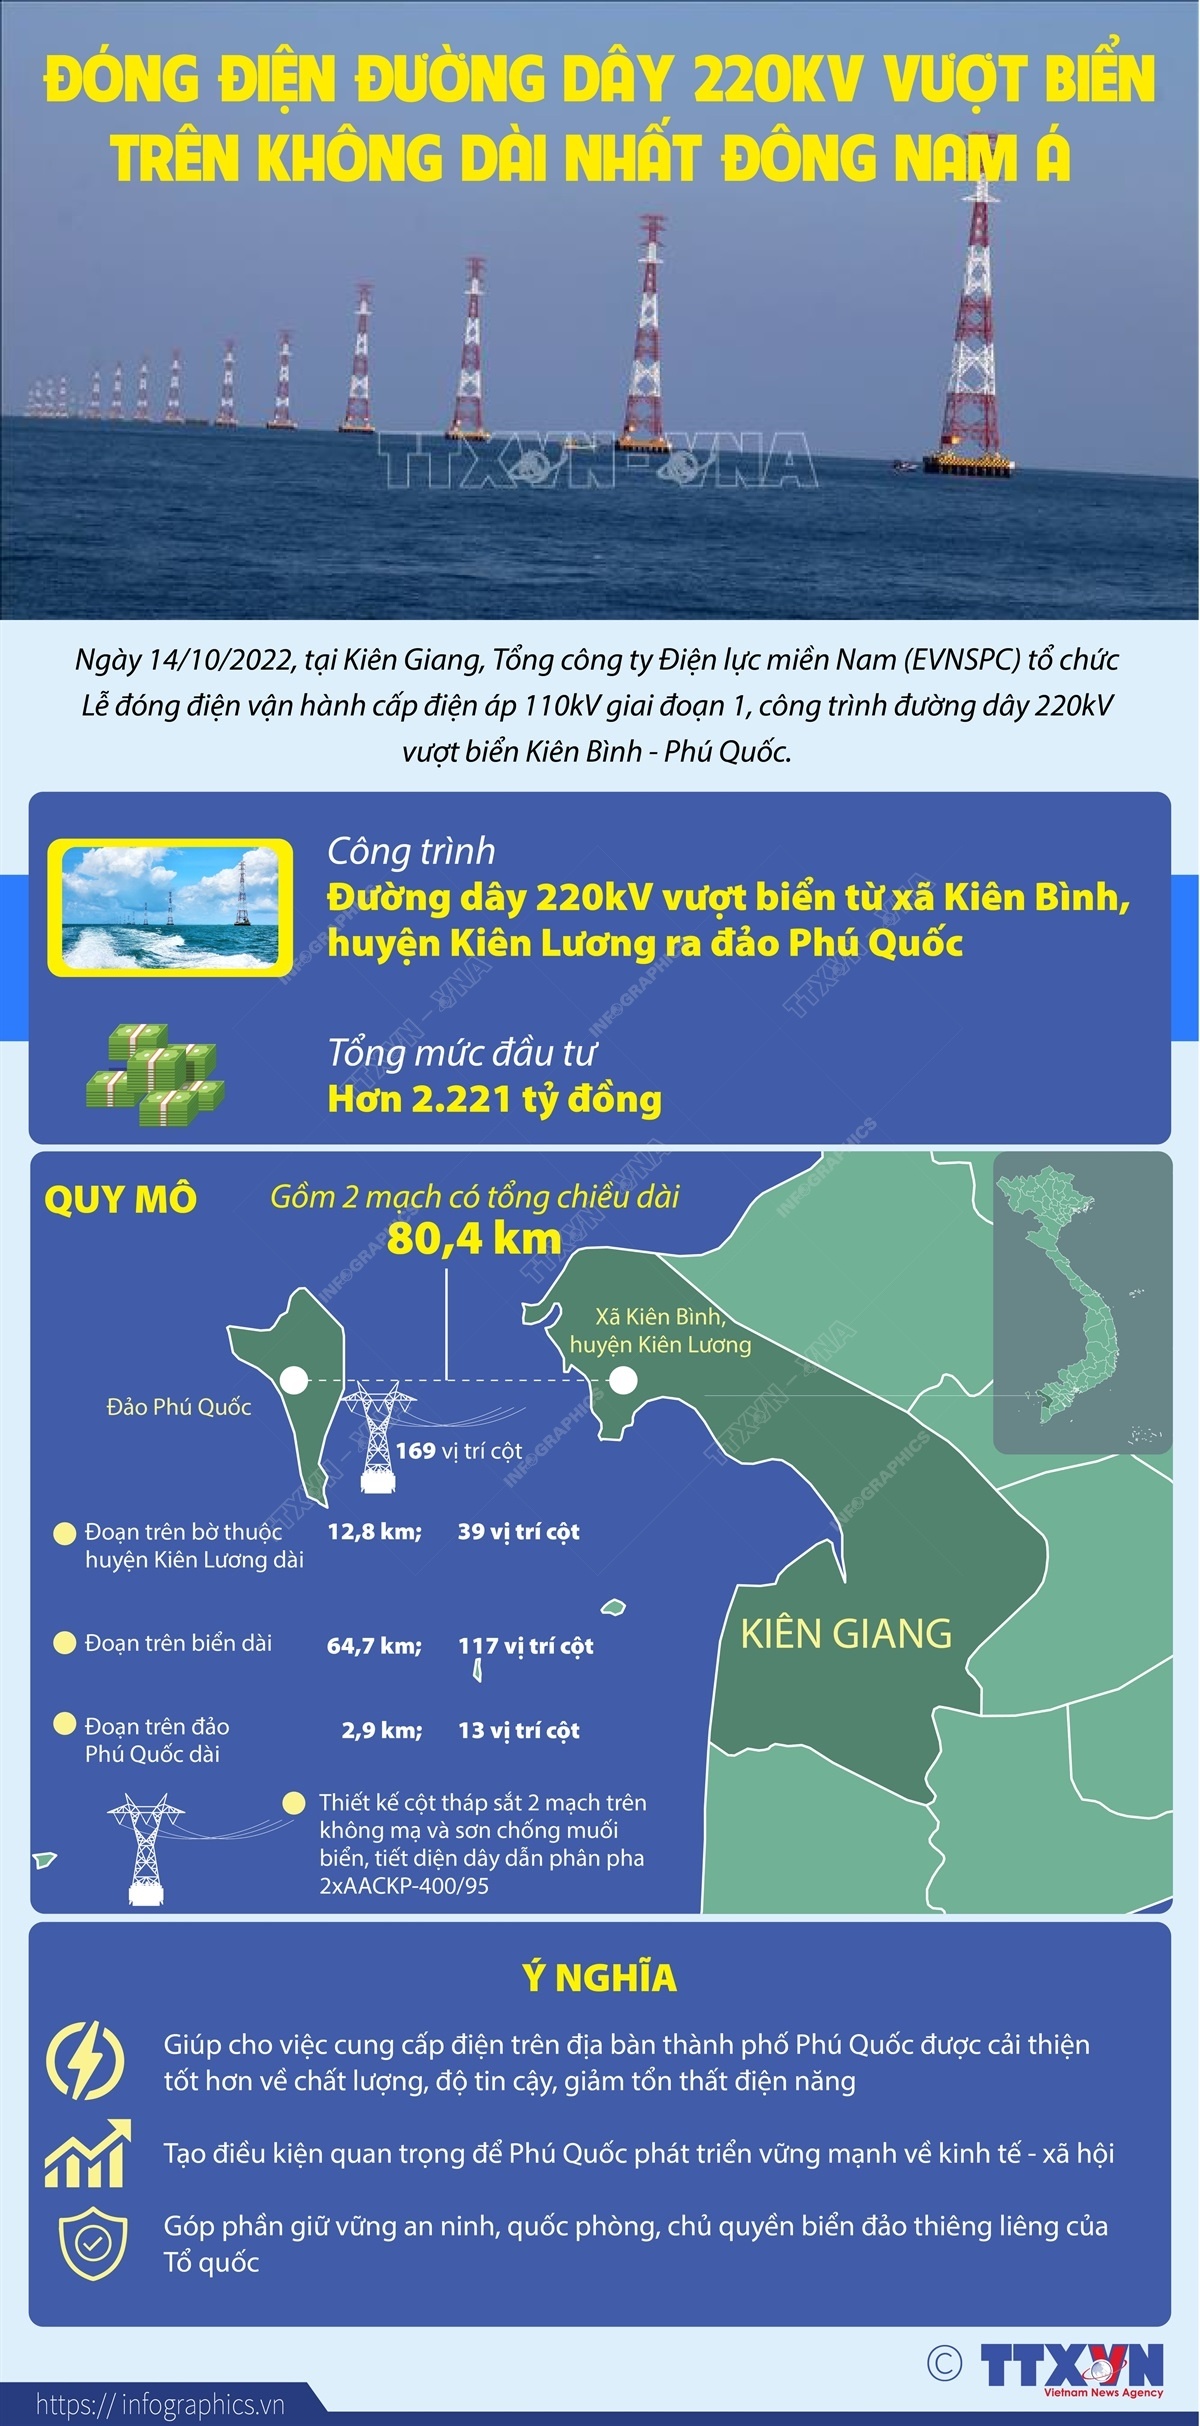 Thông tin chi tiết về đường dây 220kV vượt biển Kiên Bình - Phú Quốc